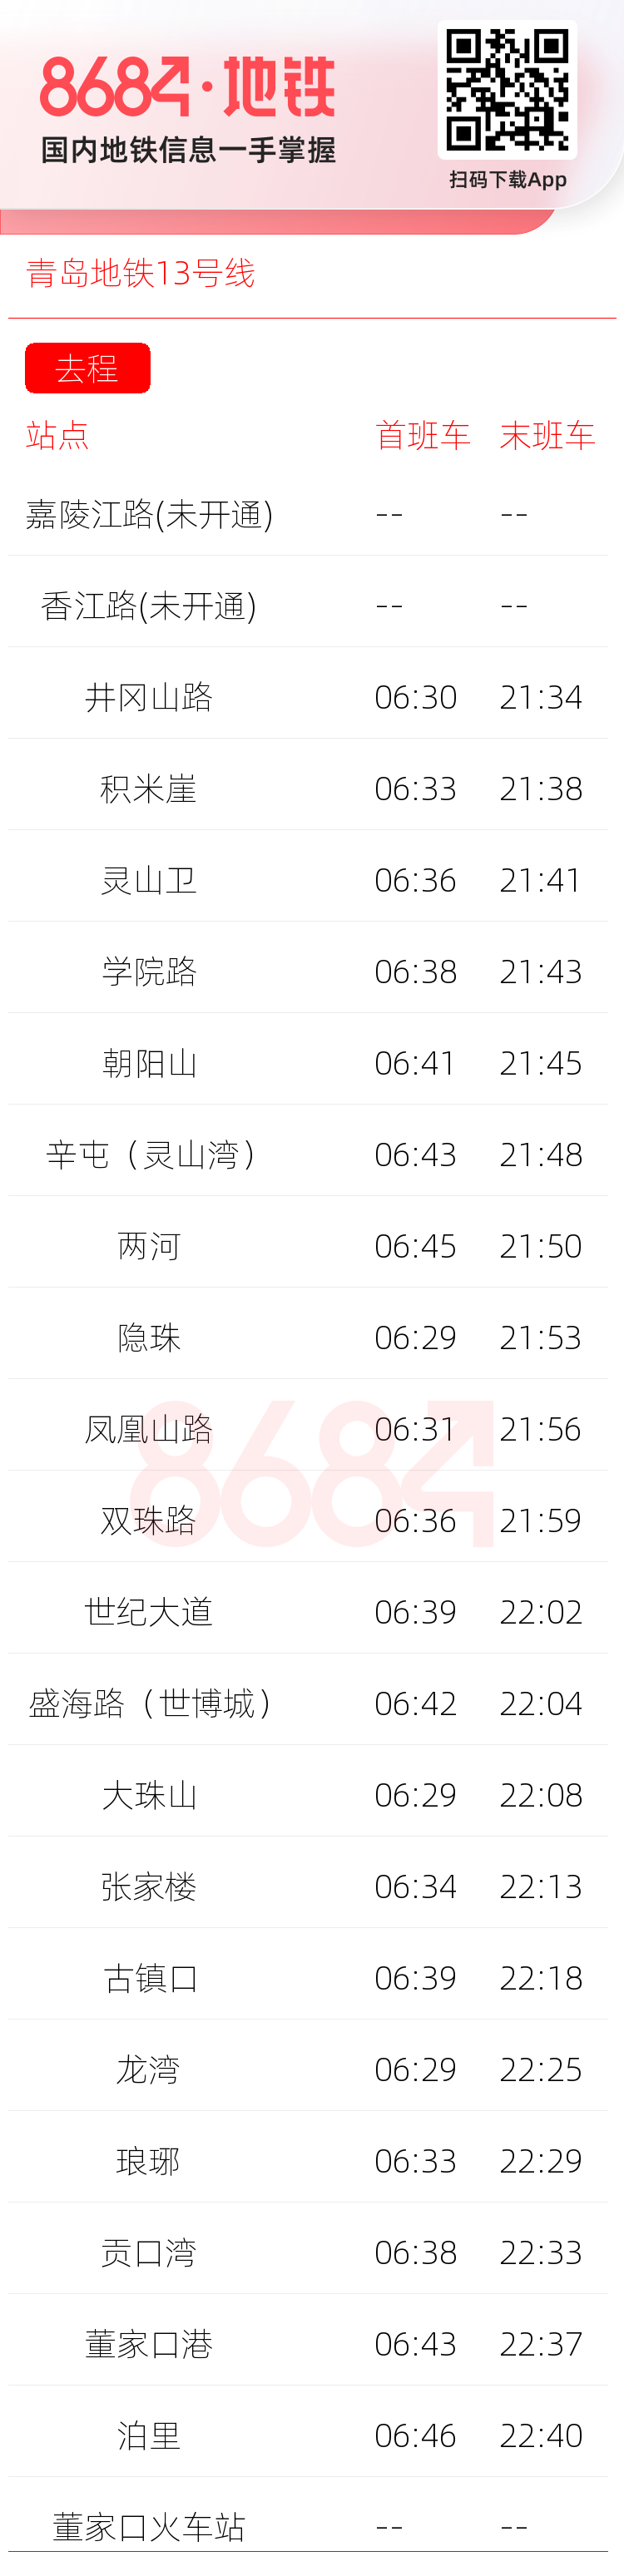 青岛地铁13号线运营时间表